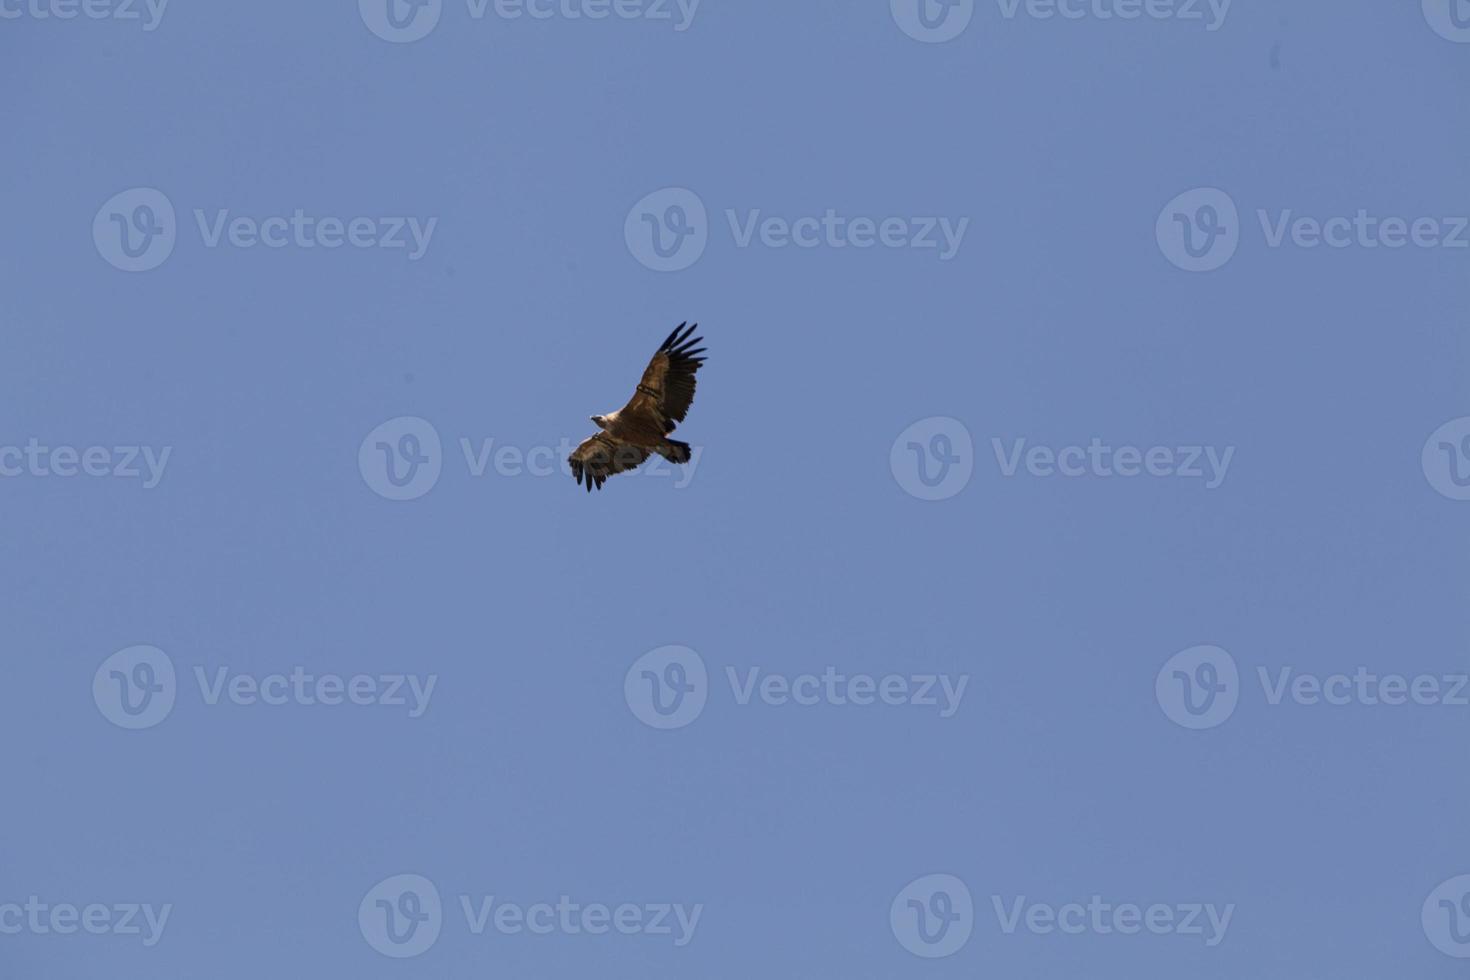 incrível abutre de israel, abutre da terra santa foto